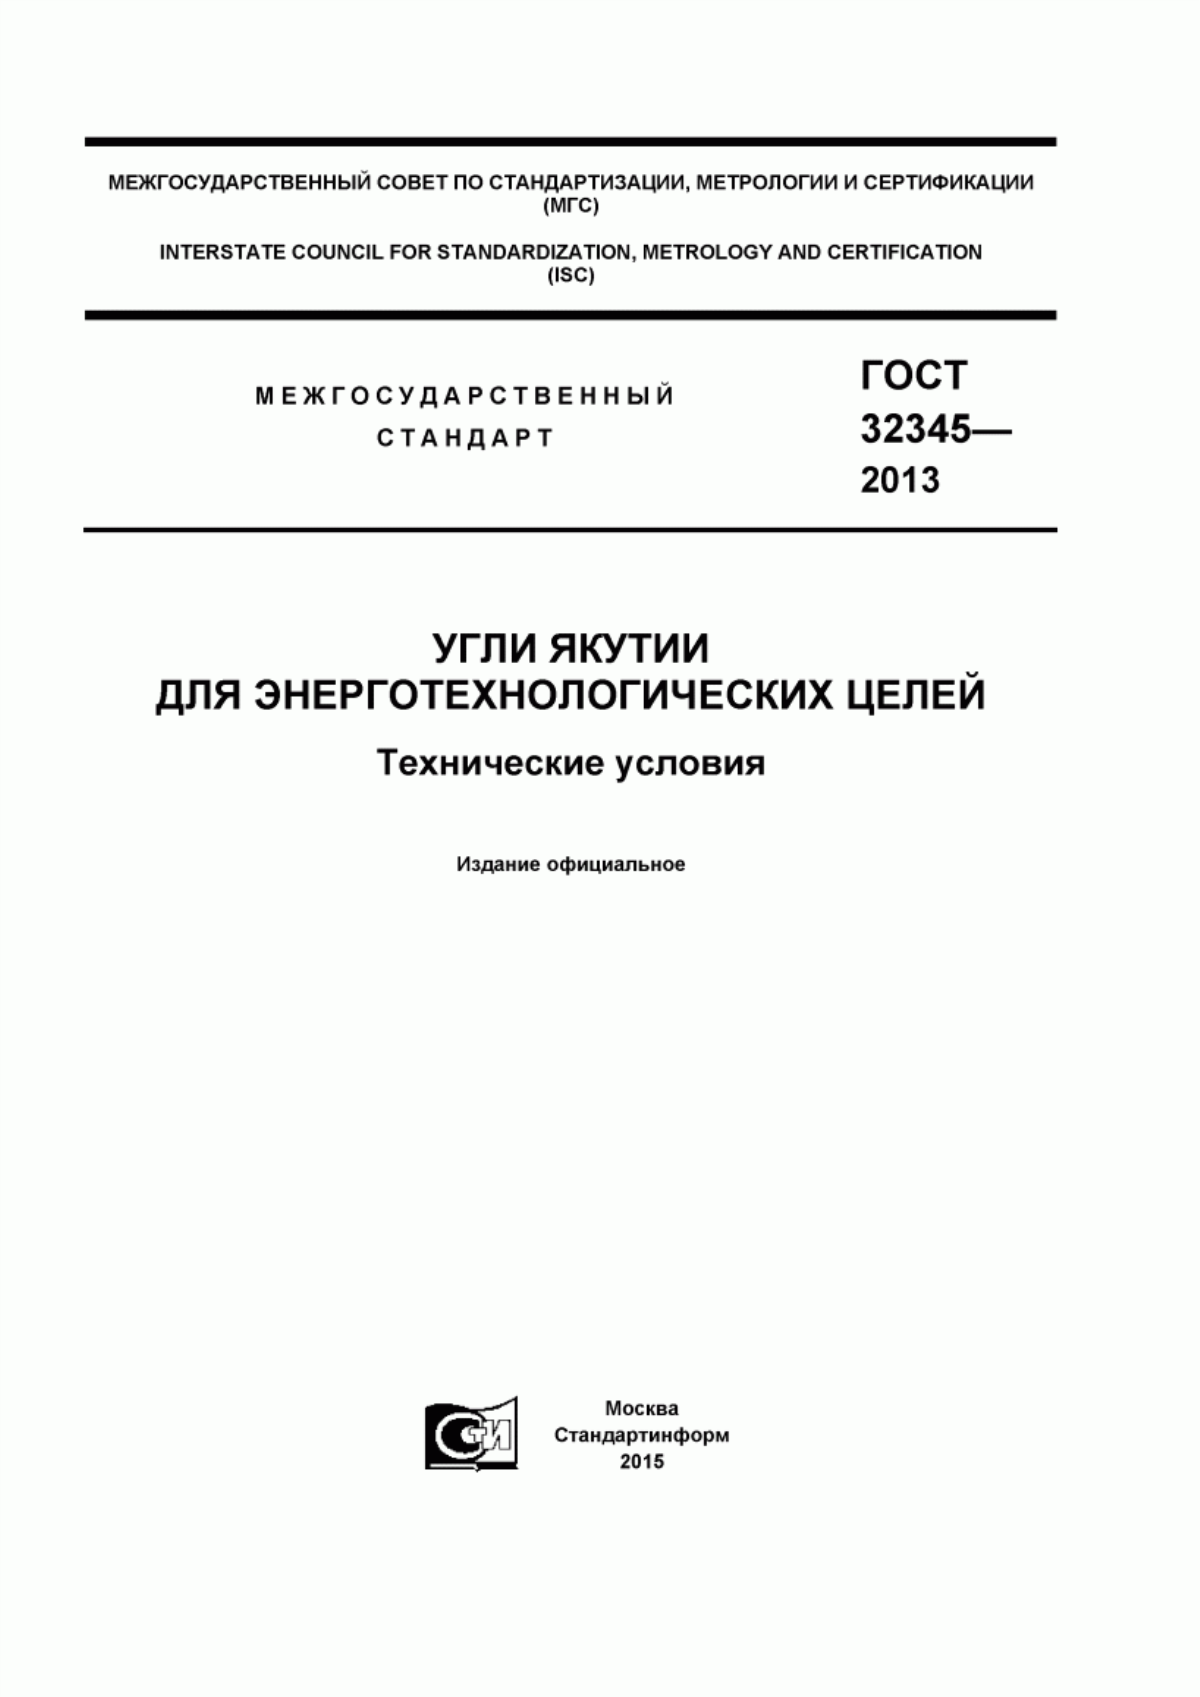 ГОСТ 32345-2013 Угли Якутии для энерготехнологических целей. Технические условия